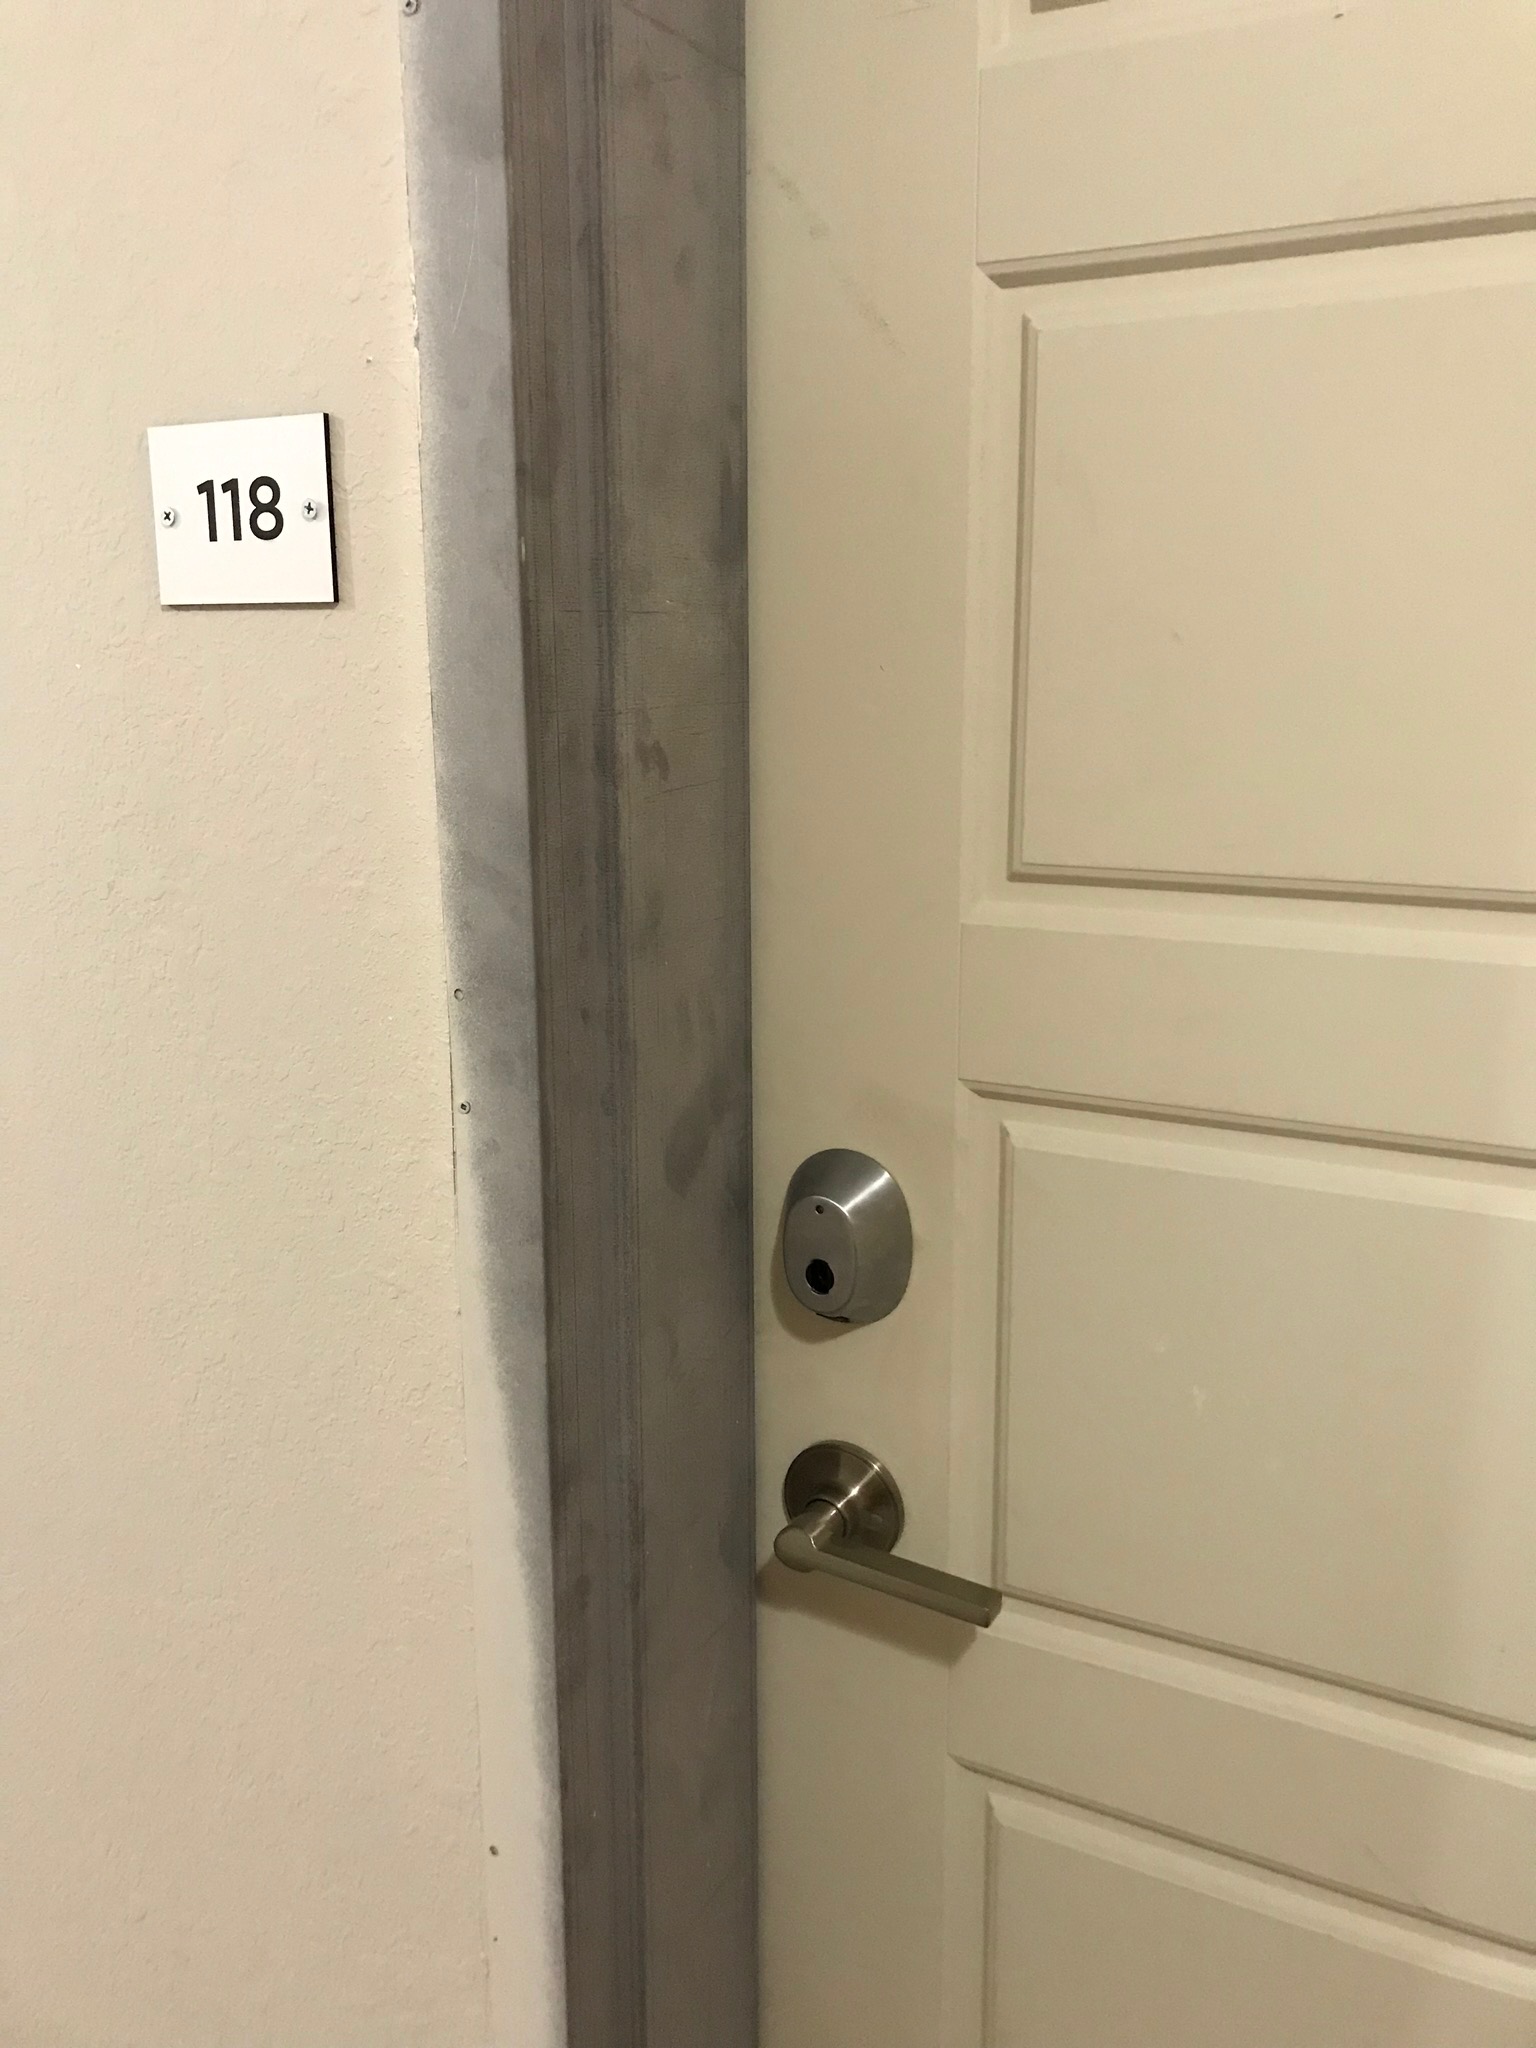 Saflok installed on residence door